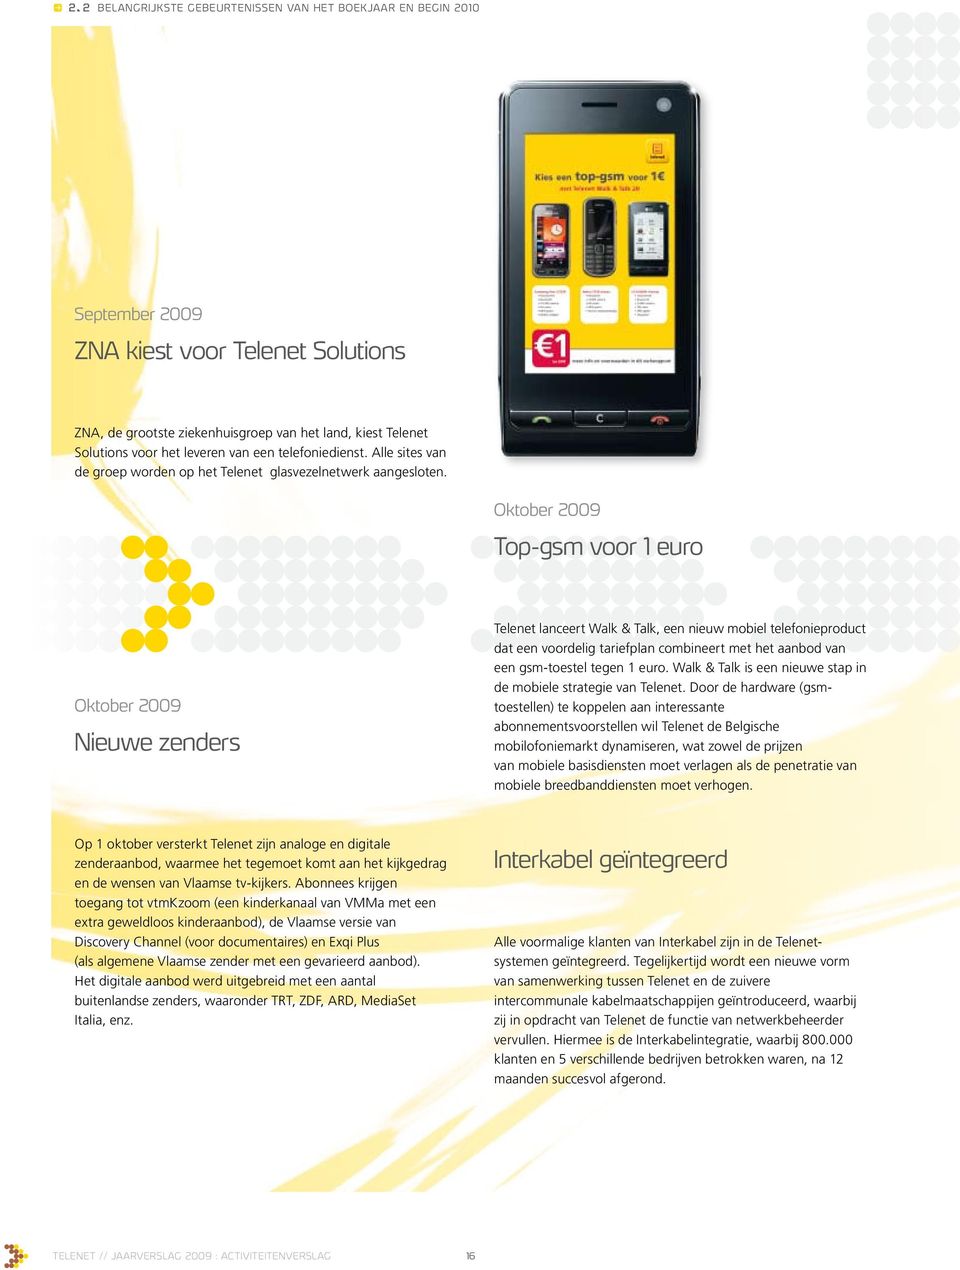 Oktober 2009 Top-gsm voor 1 euro Oktober 2009 Nieuwe zenders Telenet lanceert Walk & Talk, een nieuw mobiel telefonieproduct dat een voordelig tariefplan combineert met het aanbod van een gsm-toestel